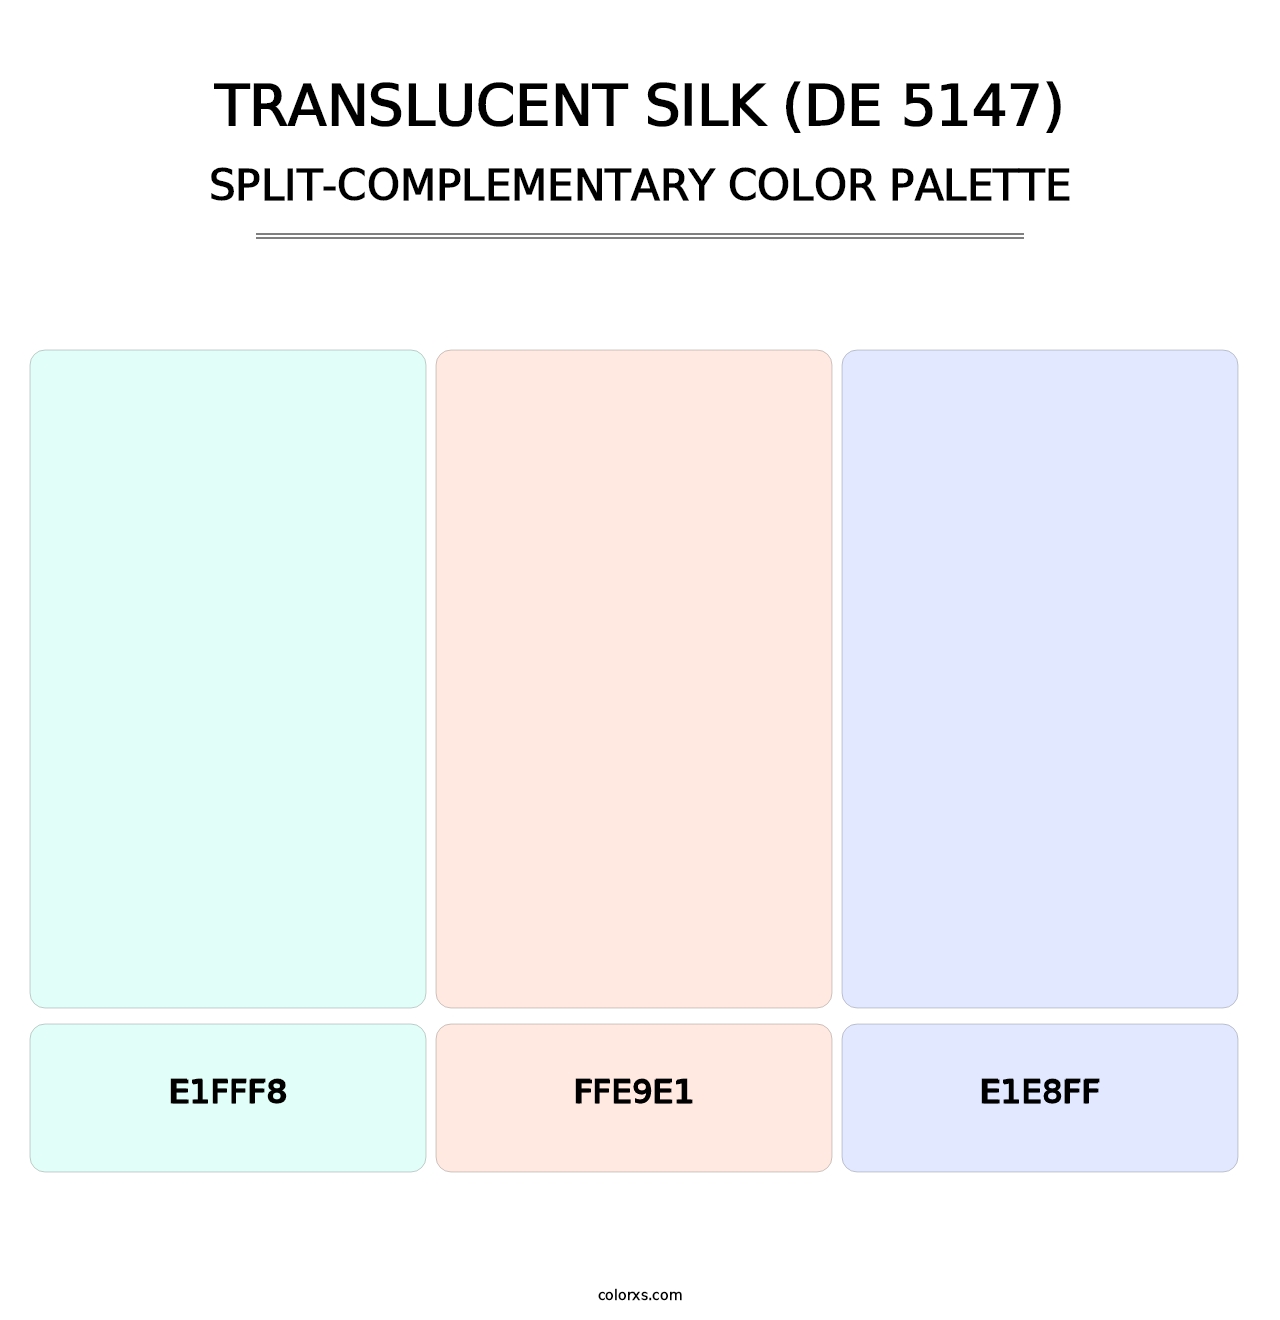 Translucent Silk (DE 5147) - Split-Complementary Color Palette